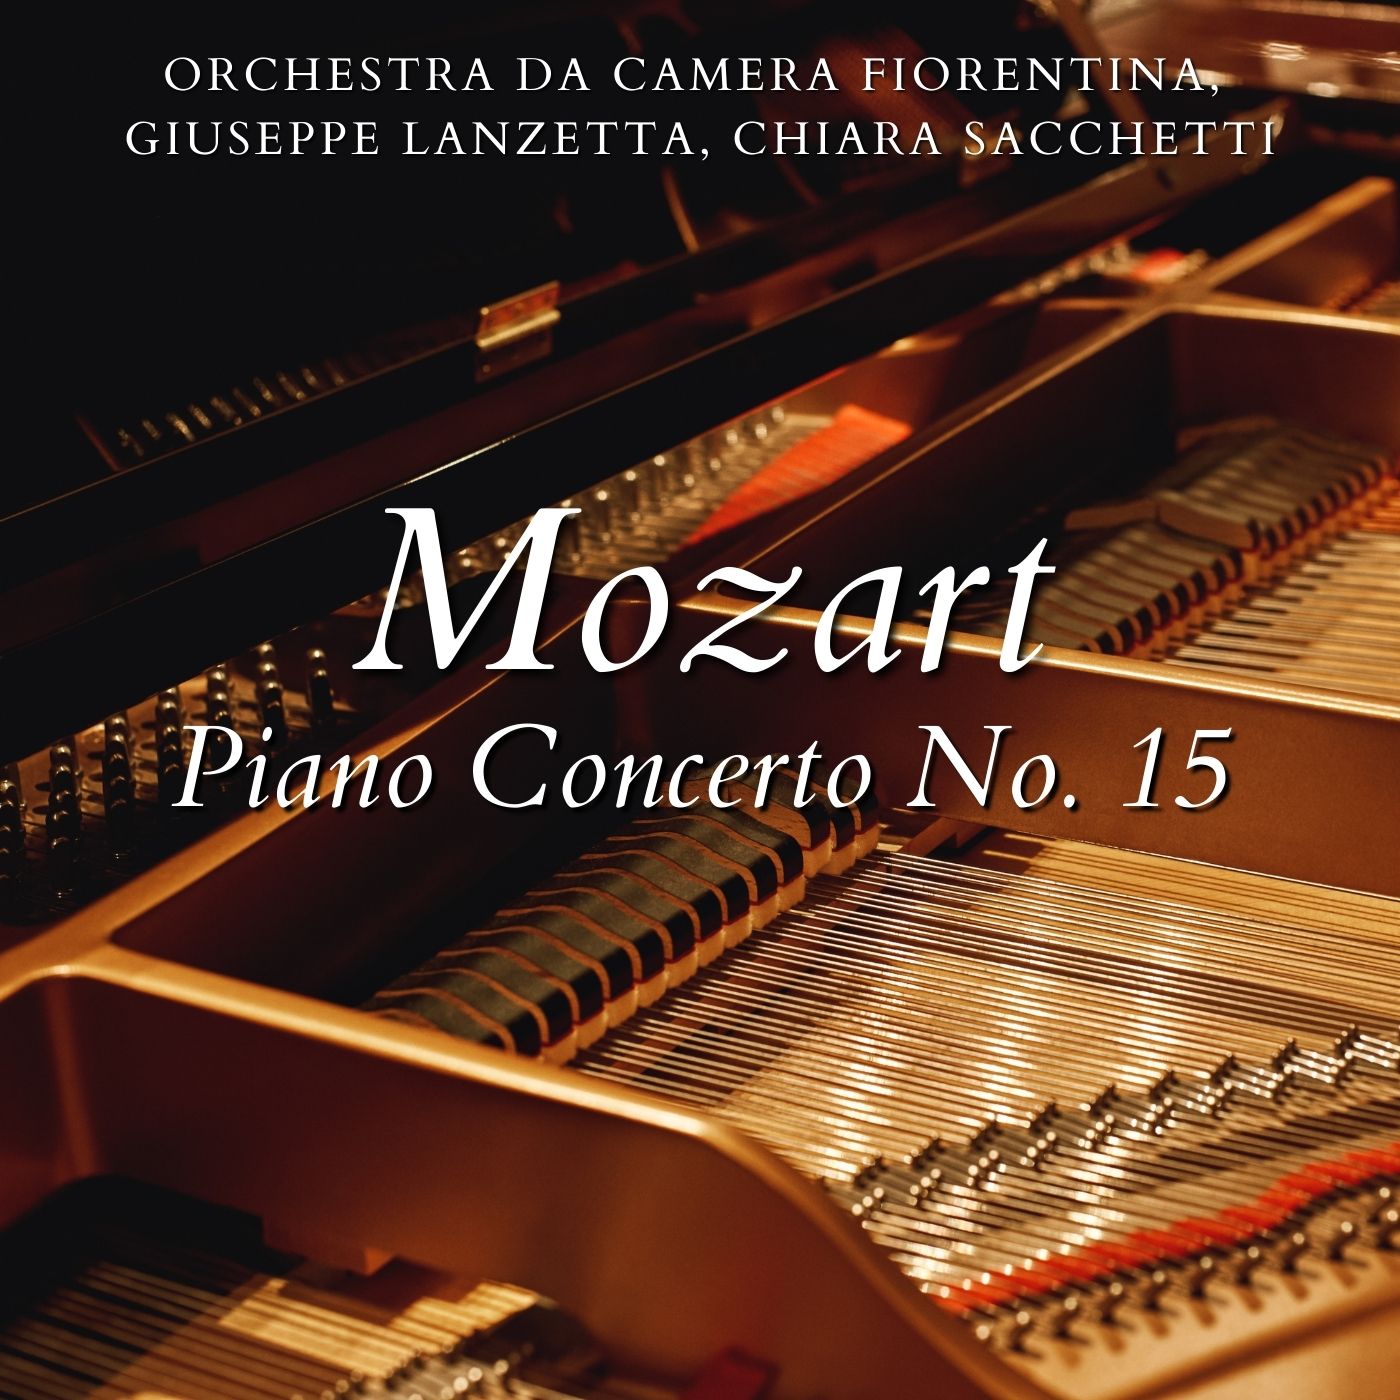 Piano Concerto No. 15 in B-flat major, K. 450